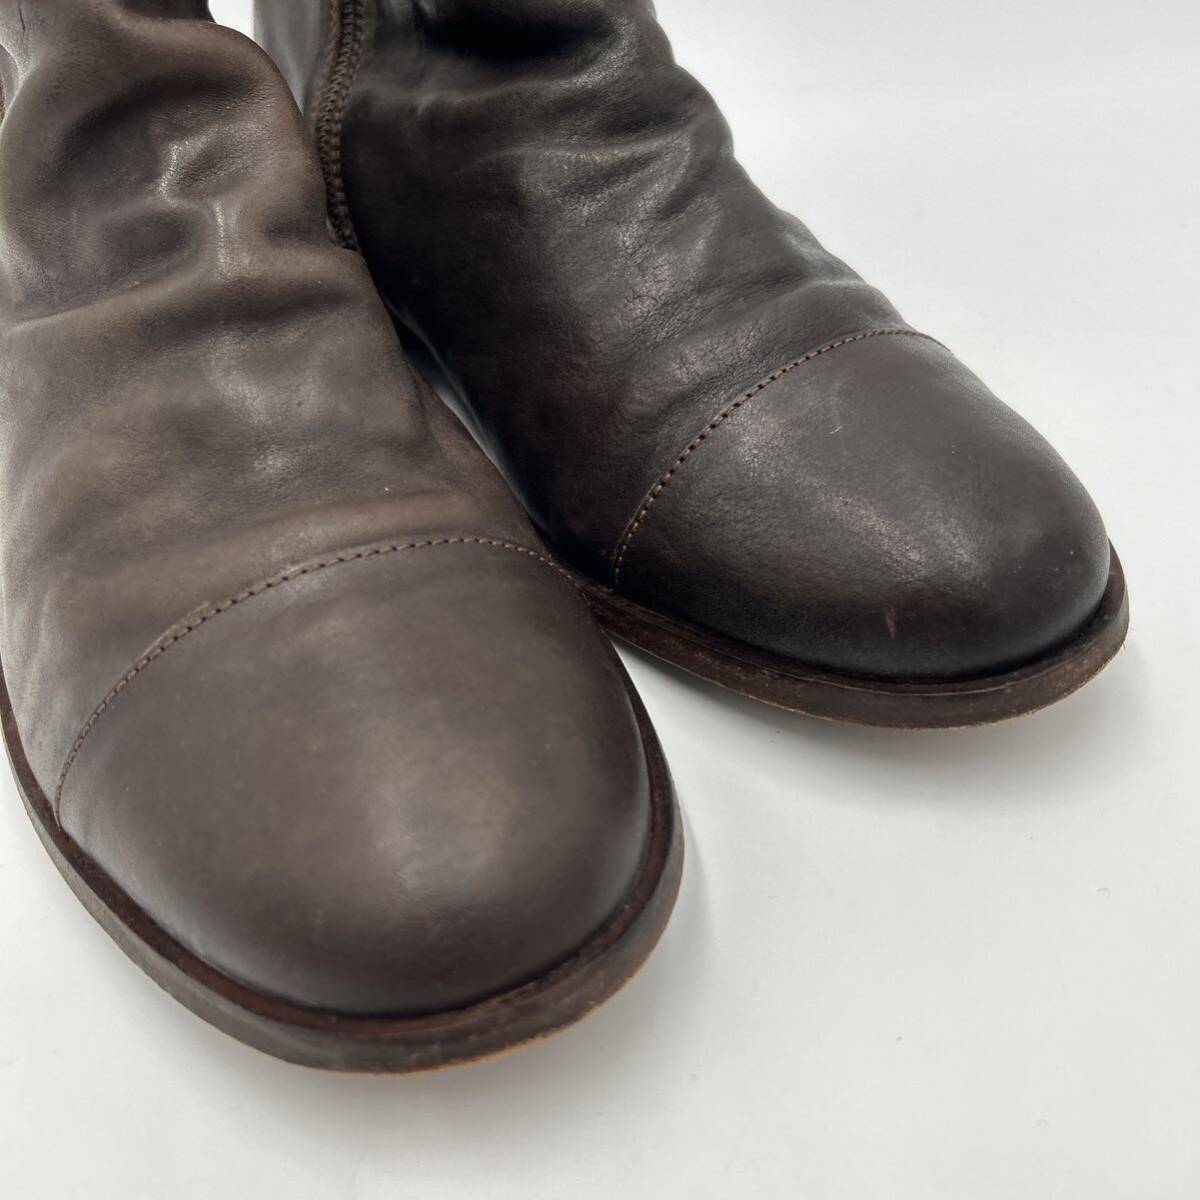 J ■ 極上レザー使用 '人気モデル' CAMPER カンペール 本革 LEATHER サイドジップ ショート ブーツ EU43 27.5cm メンズ 紳士靴 シューズ の画像4